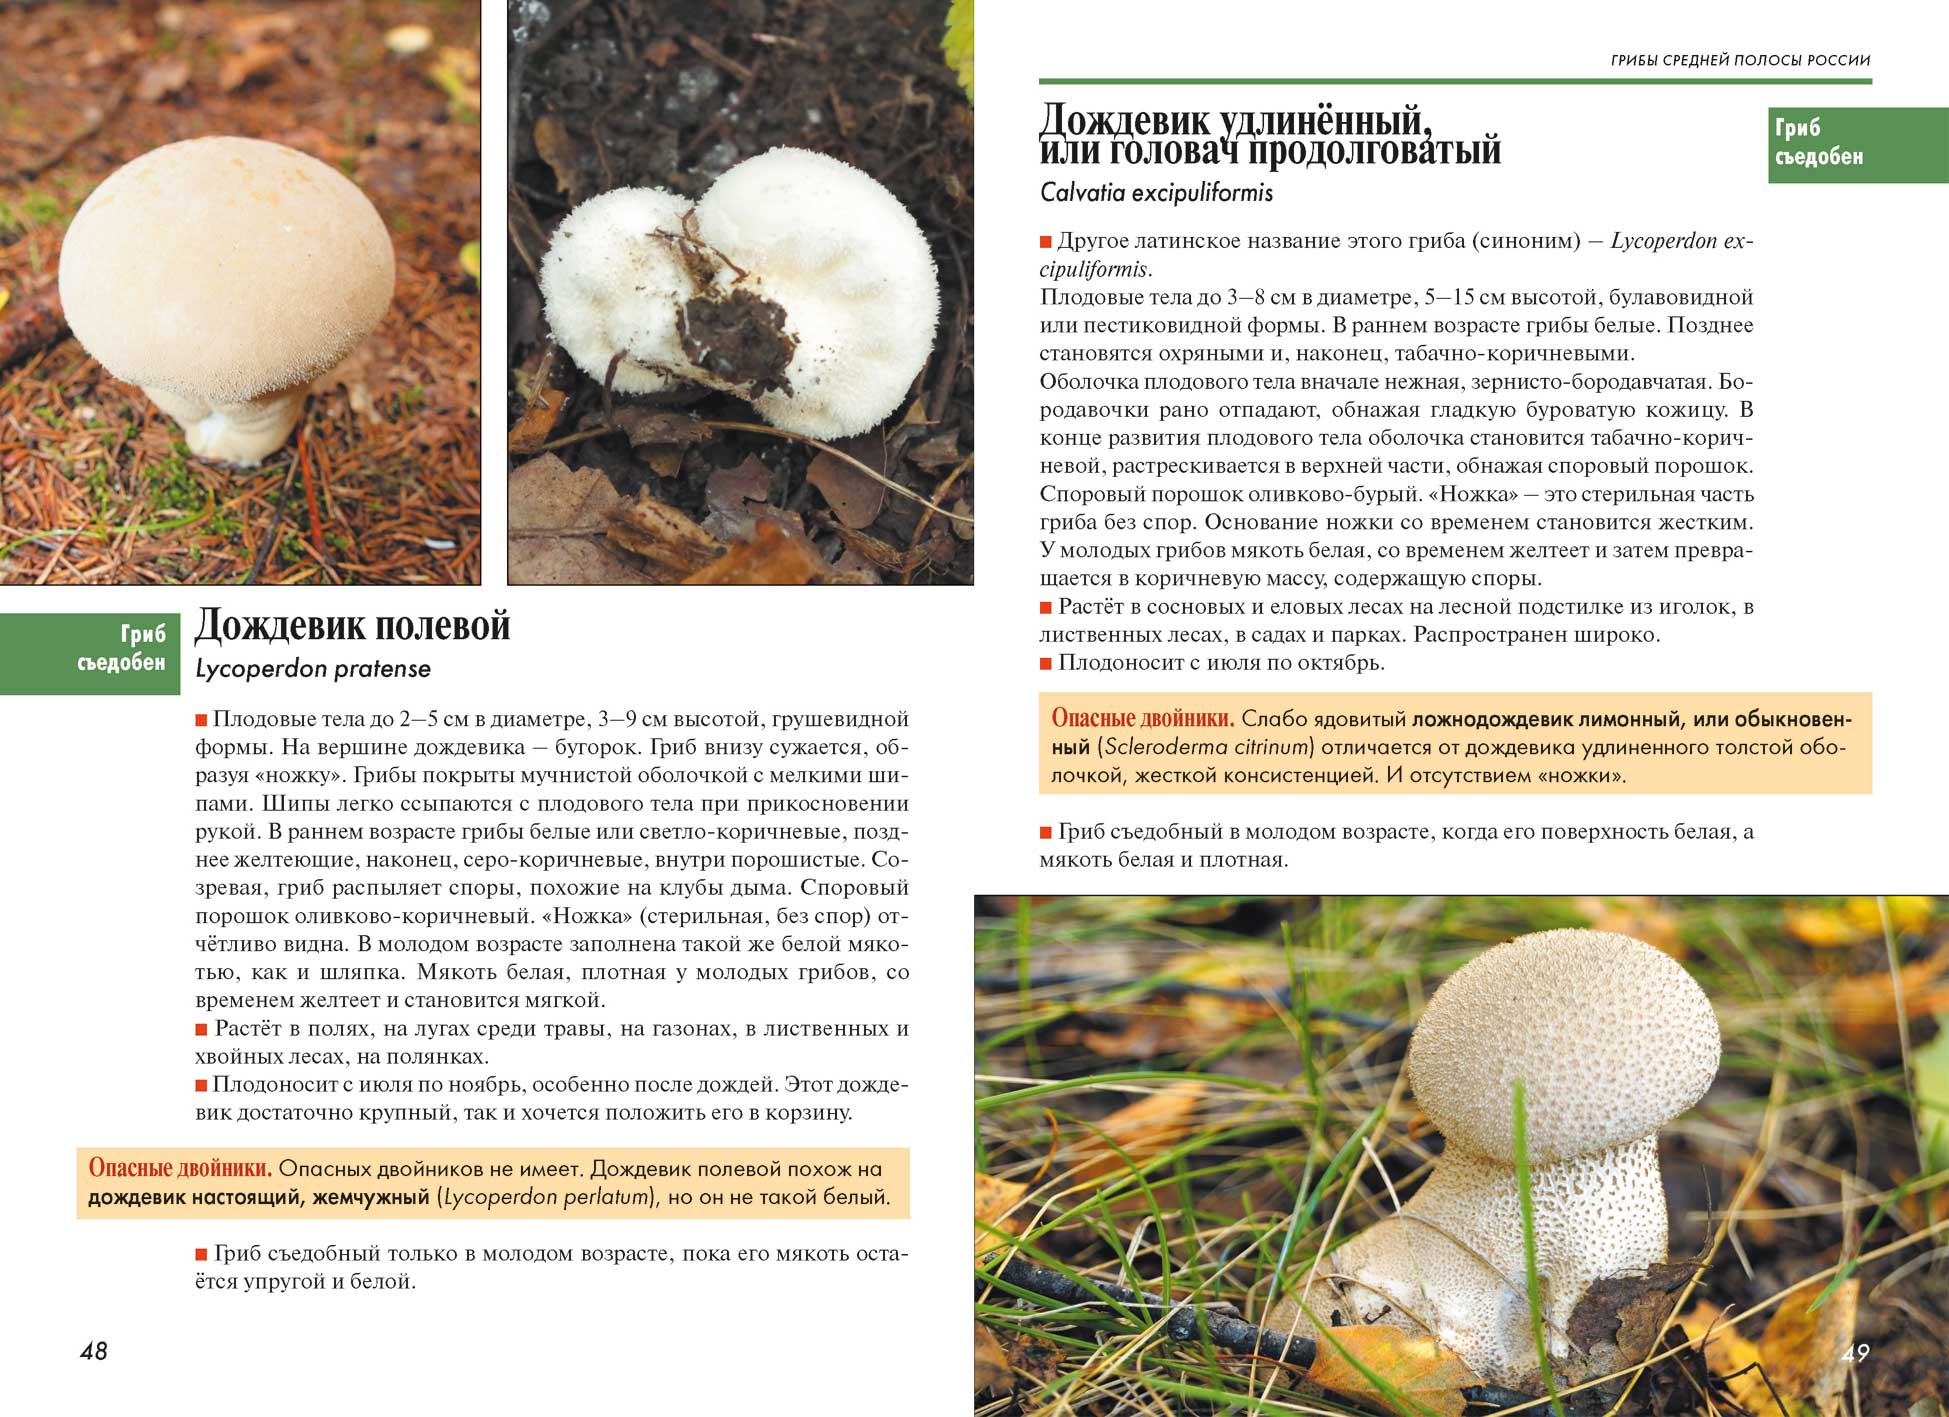 Каштановый гриб - 71 фото гриба и рецептов с его использованием